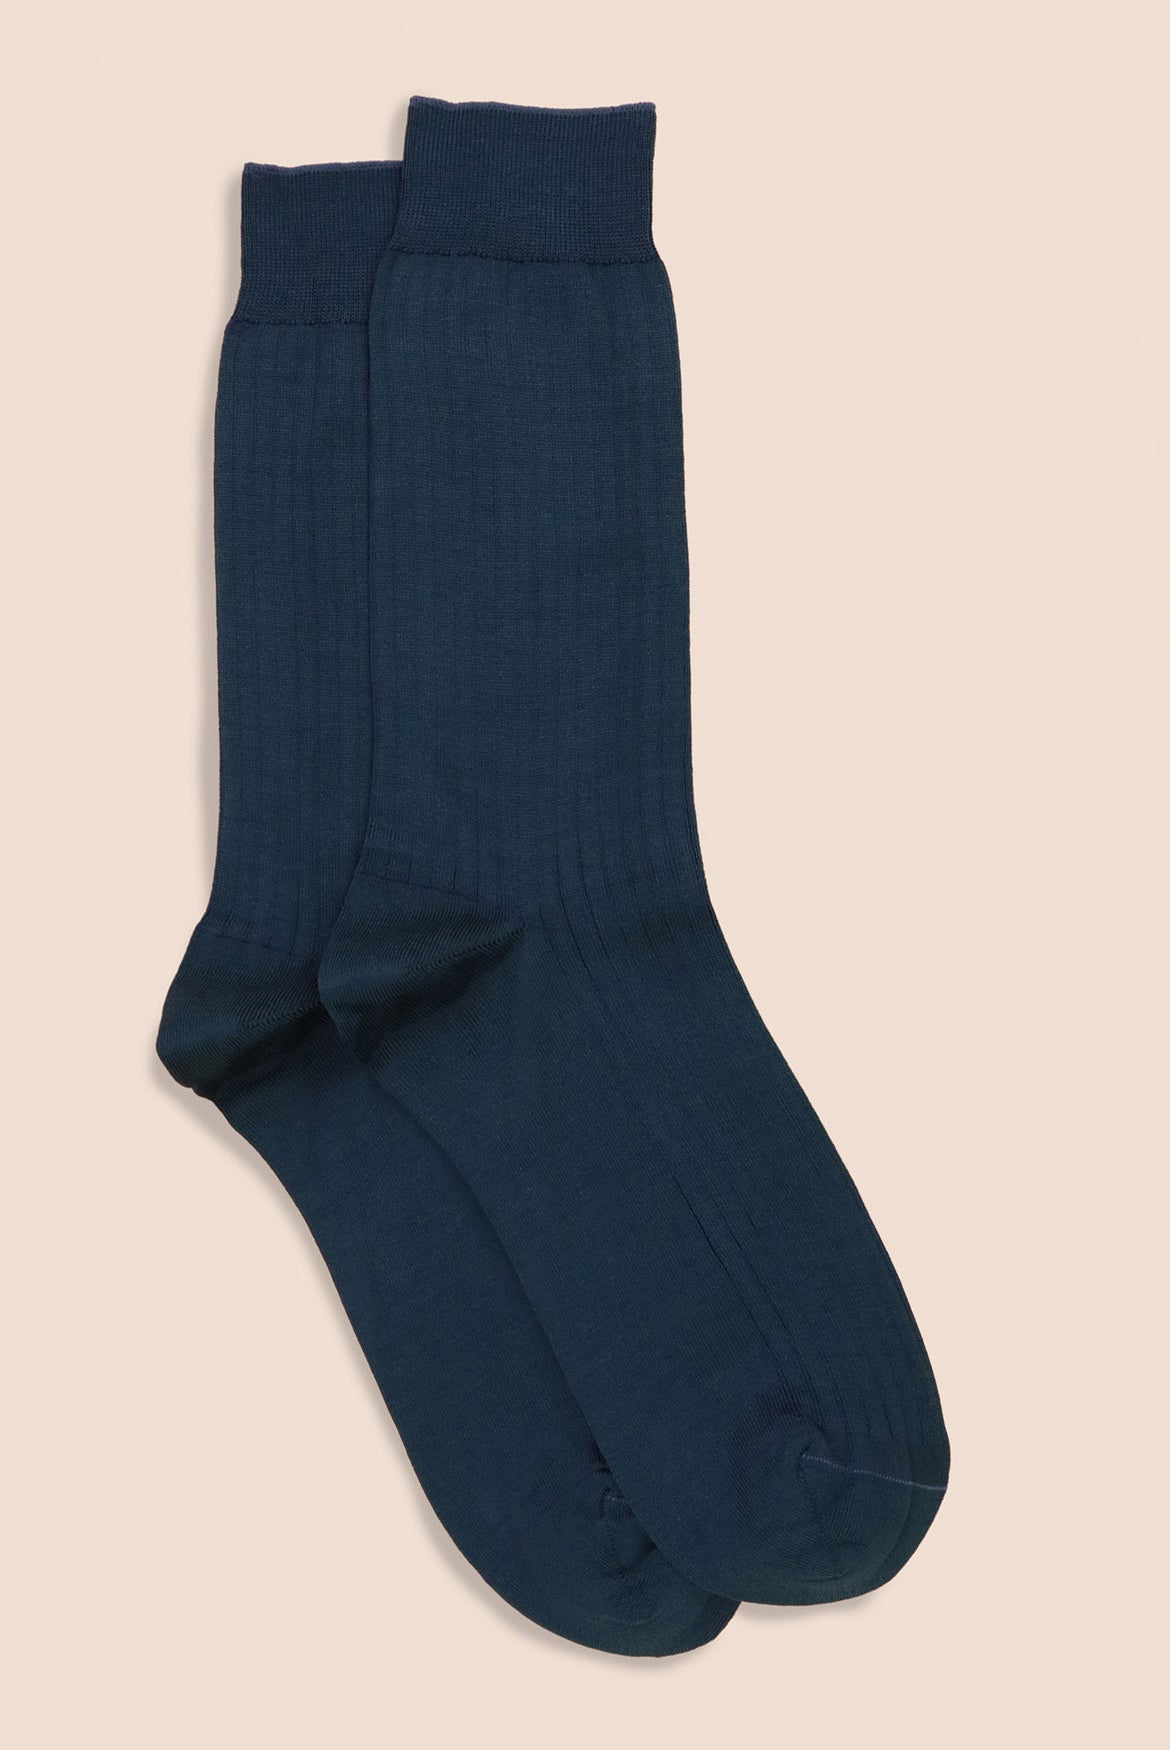 Pétrone chaussettes côtelées mi-mollet en fil d'Ecosse italien bleu acier hommes